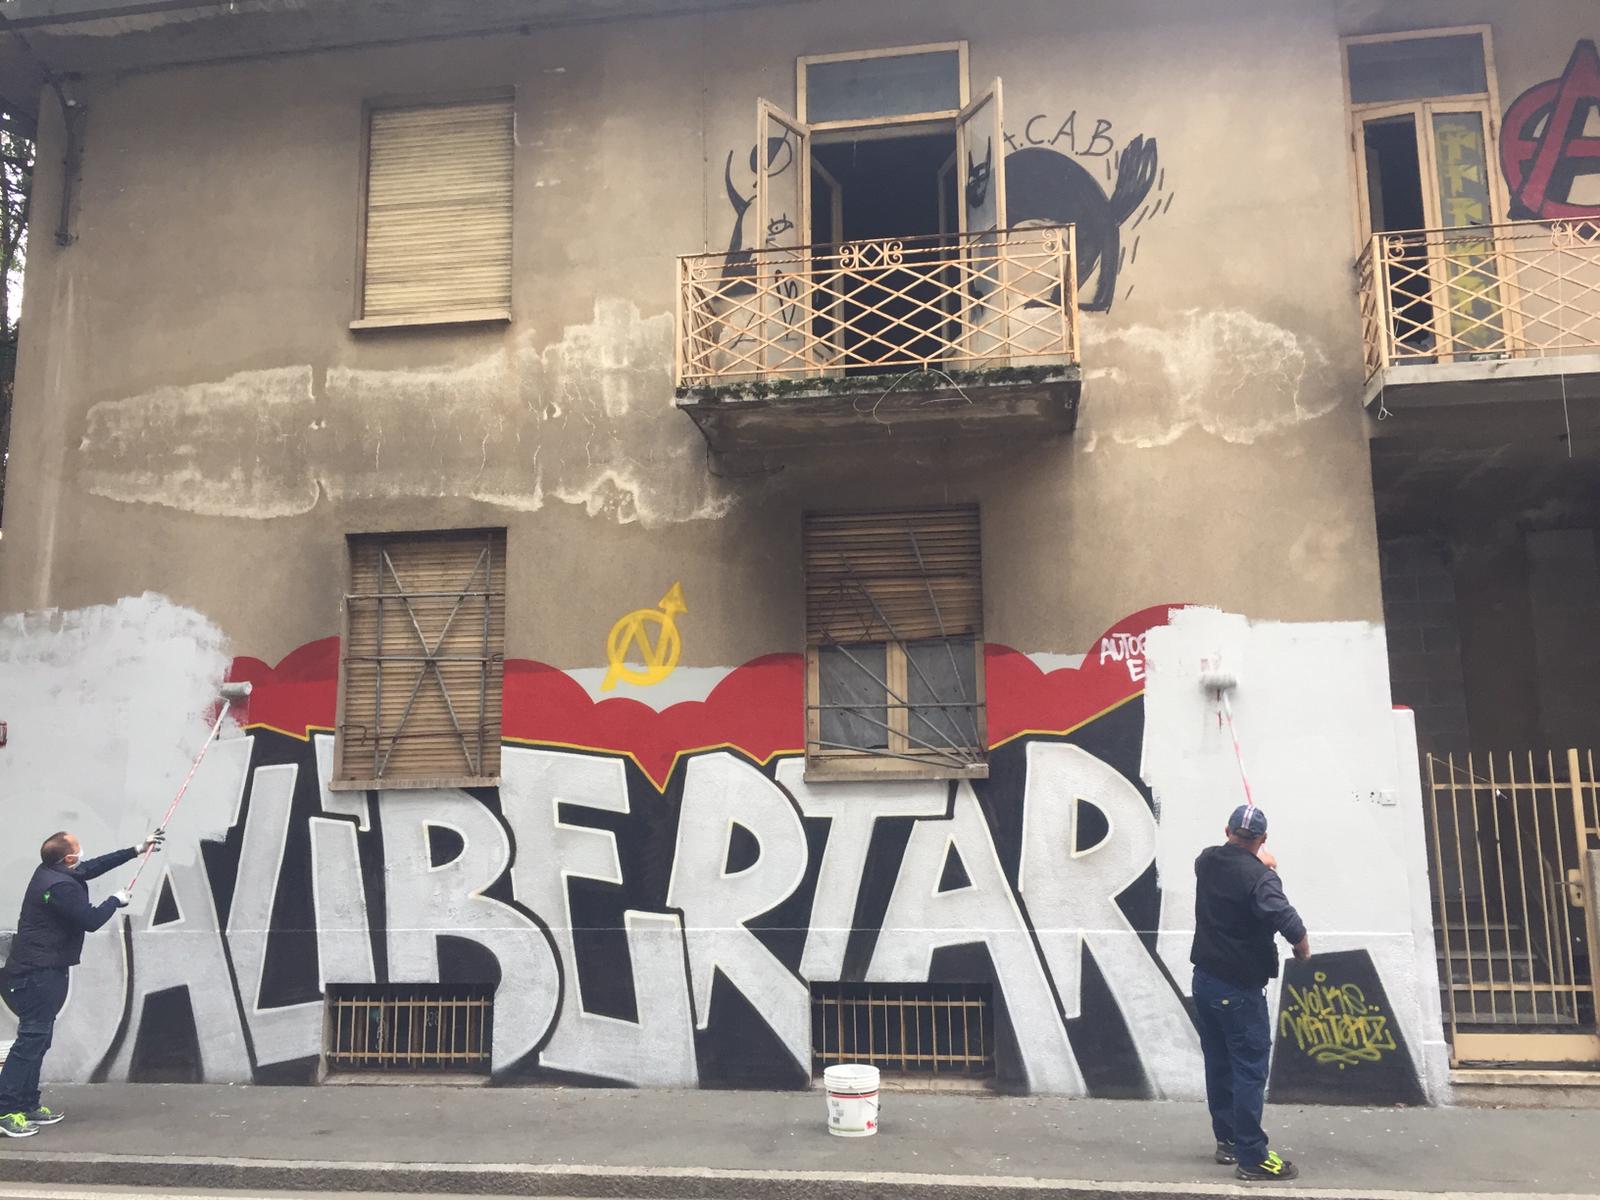 Ca’ Libertaria: vernice bianca cancella il graffito sulla casa sgomberata